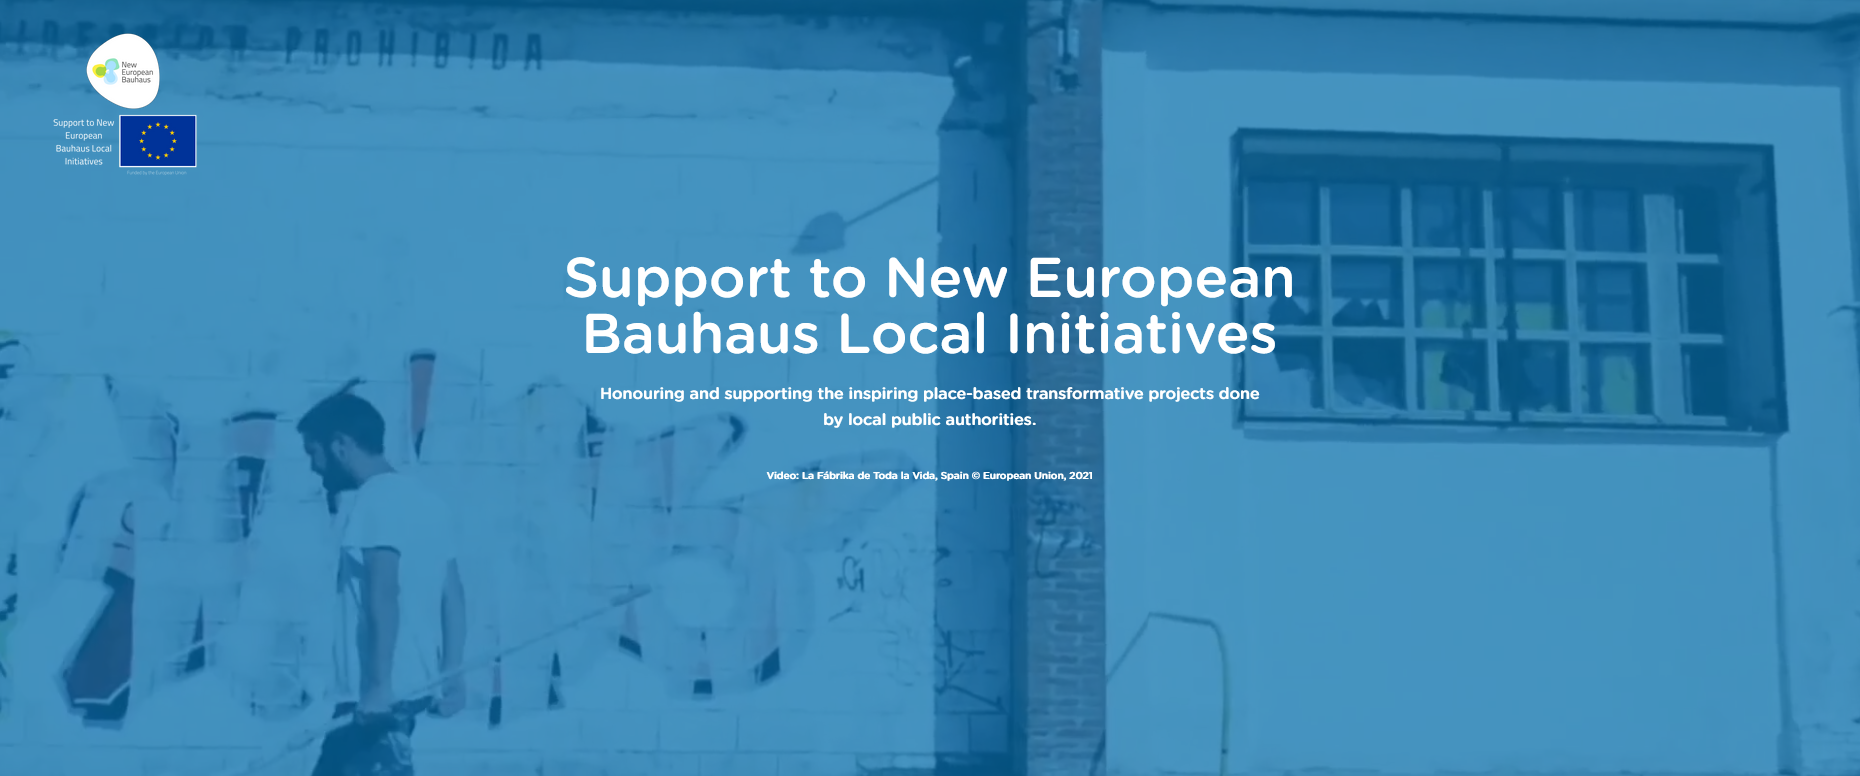 Wsparcie inicjatyw lokalnych Nowego Europejskiego Bauhausu – konkurs